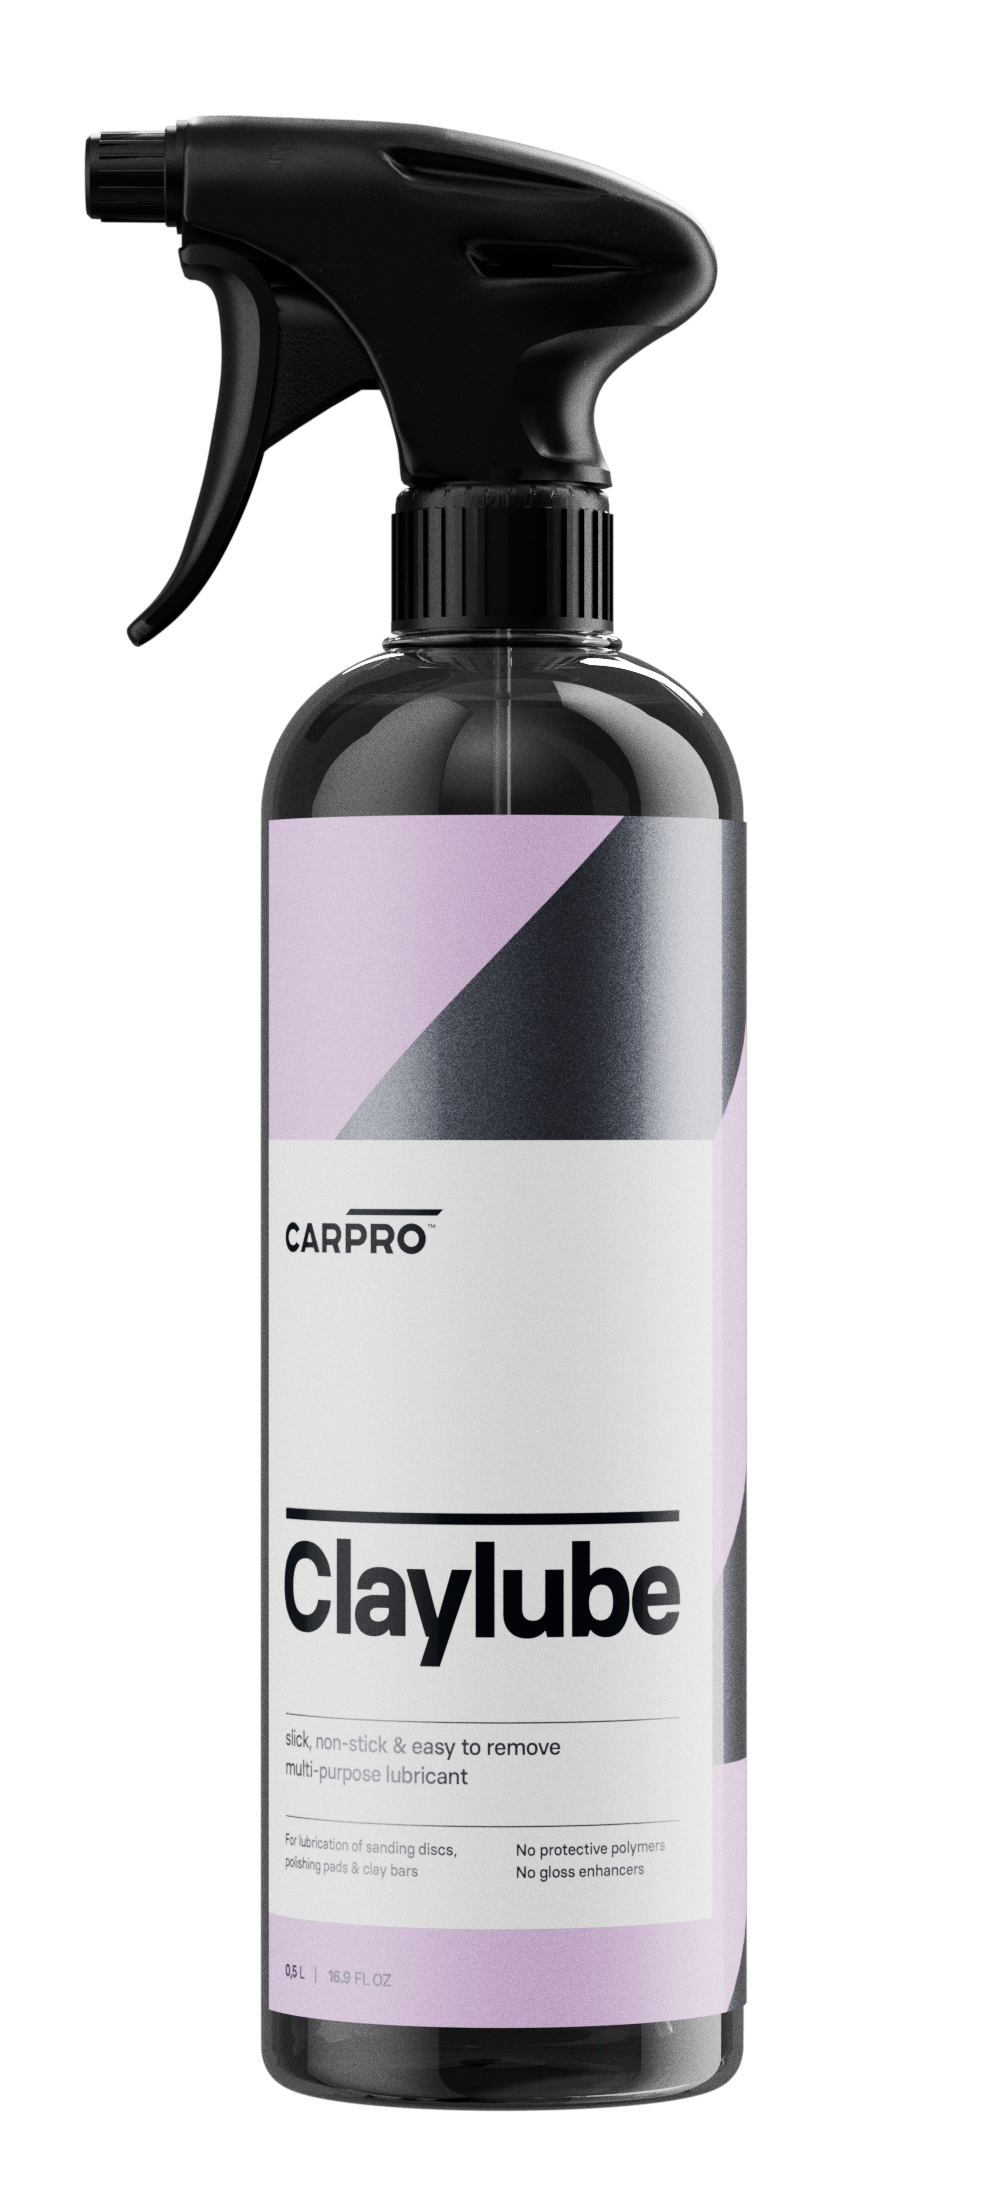 CARPRO - Claylube 500ml (Clay bar lubricant)